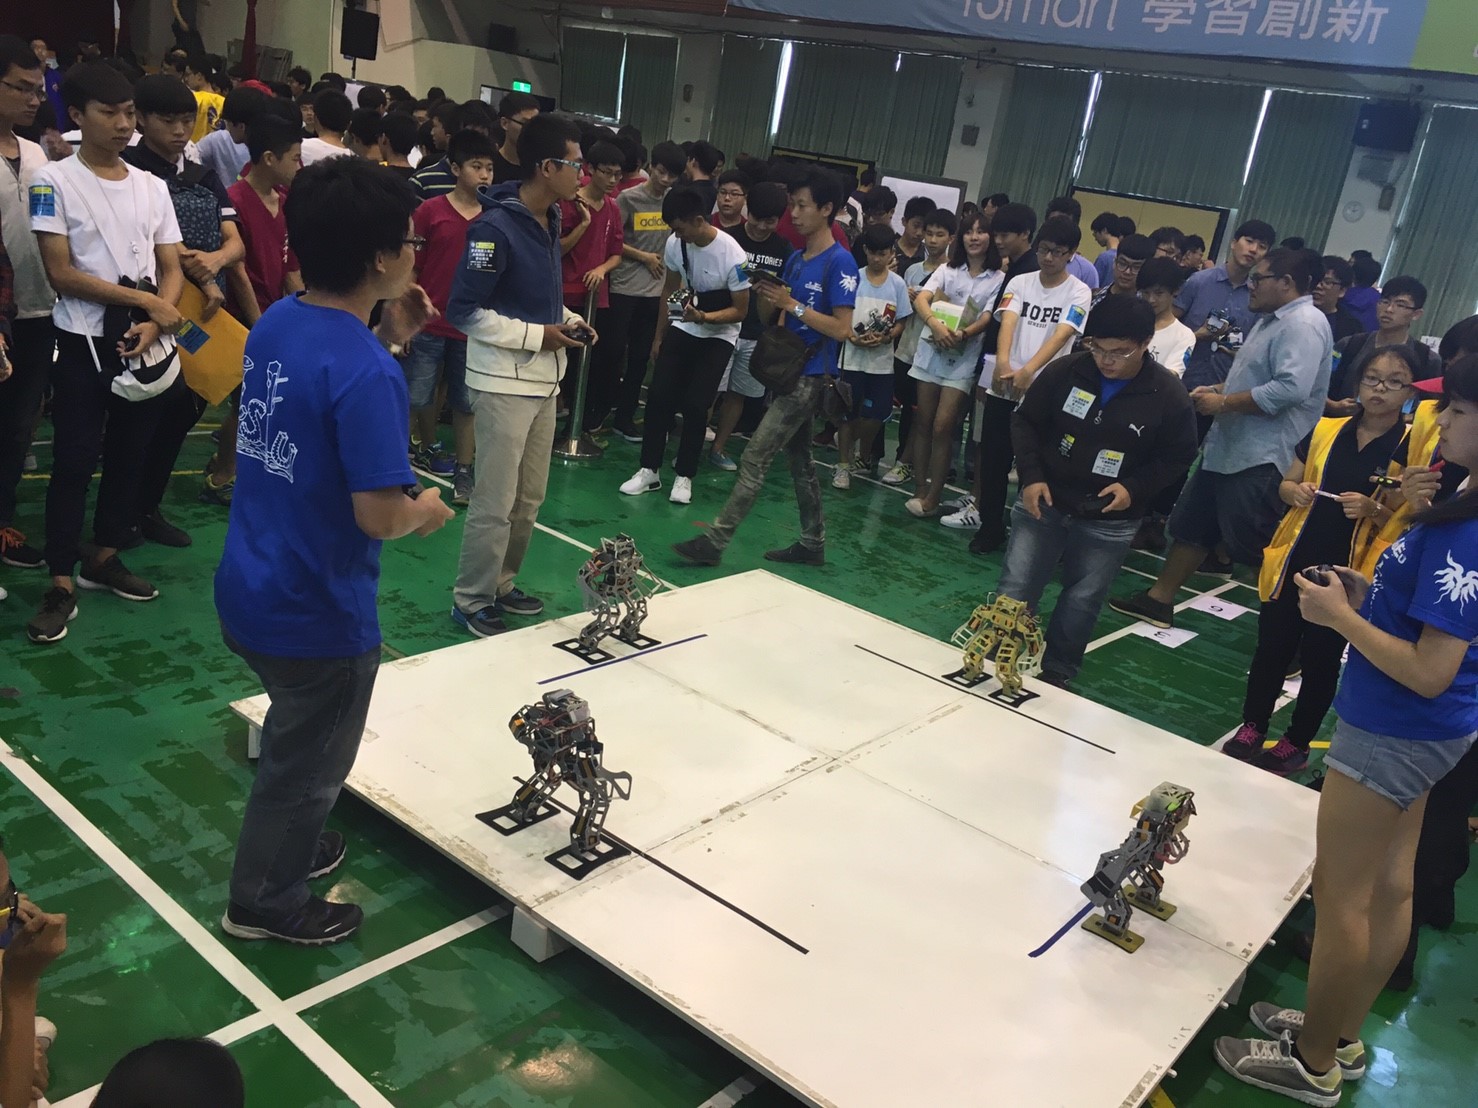 2016.11.05機器人比賽_6120